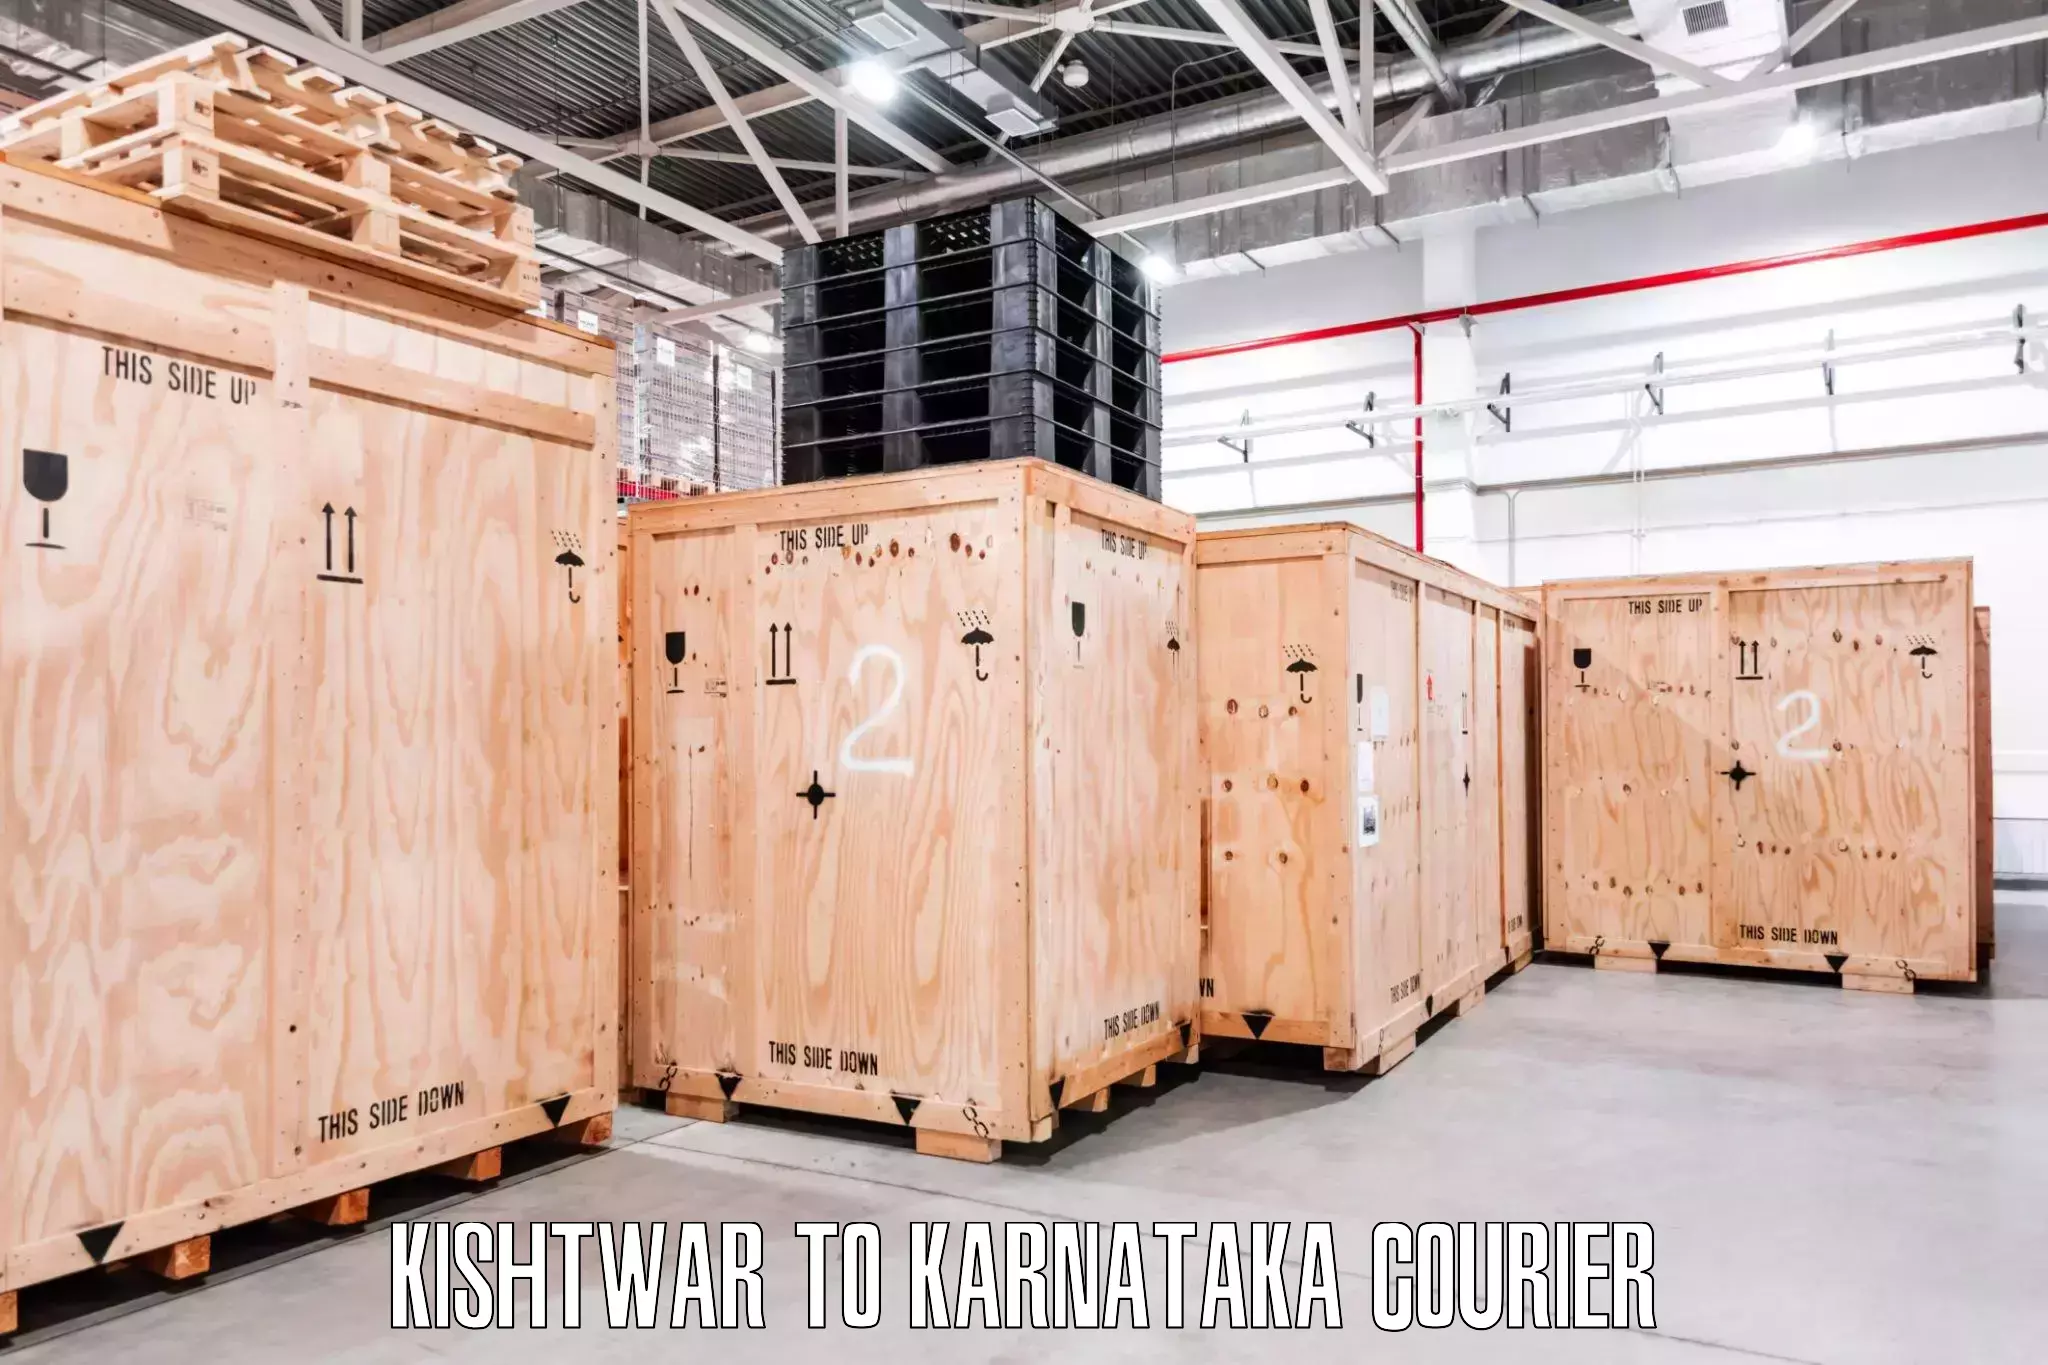 Furniture moving experts Kishtwar to Karnataka